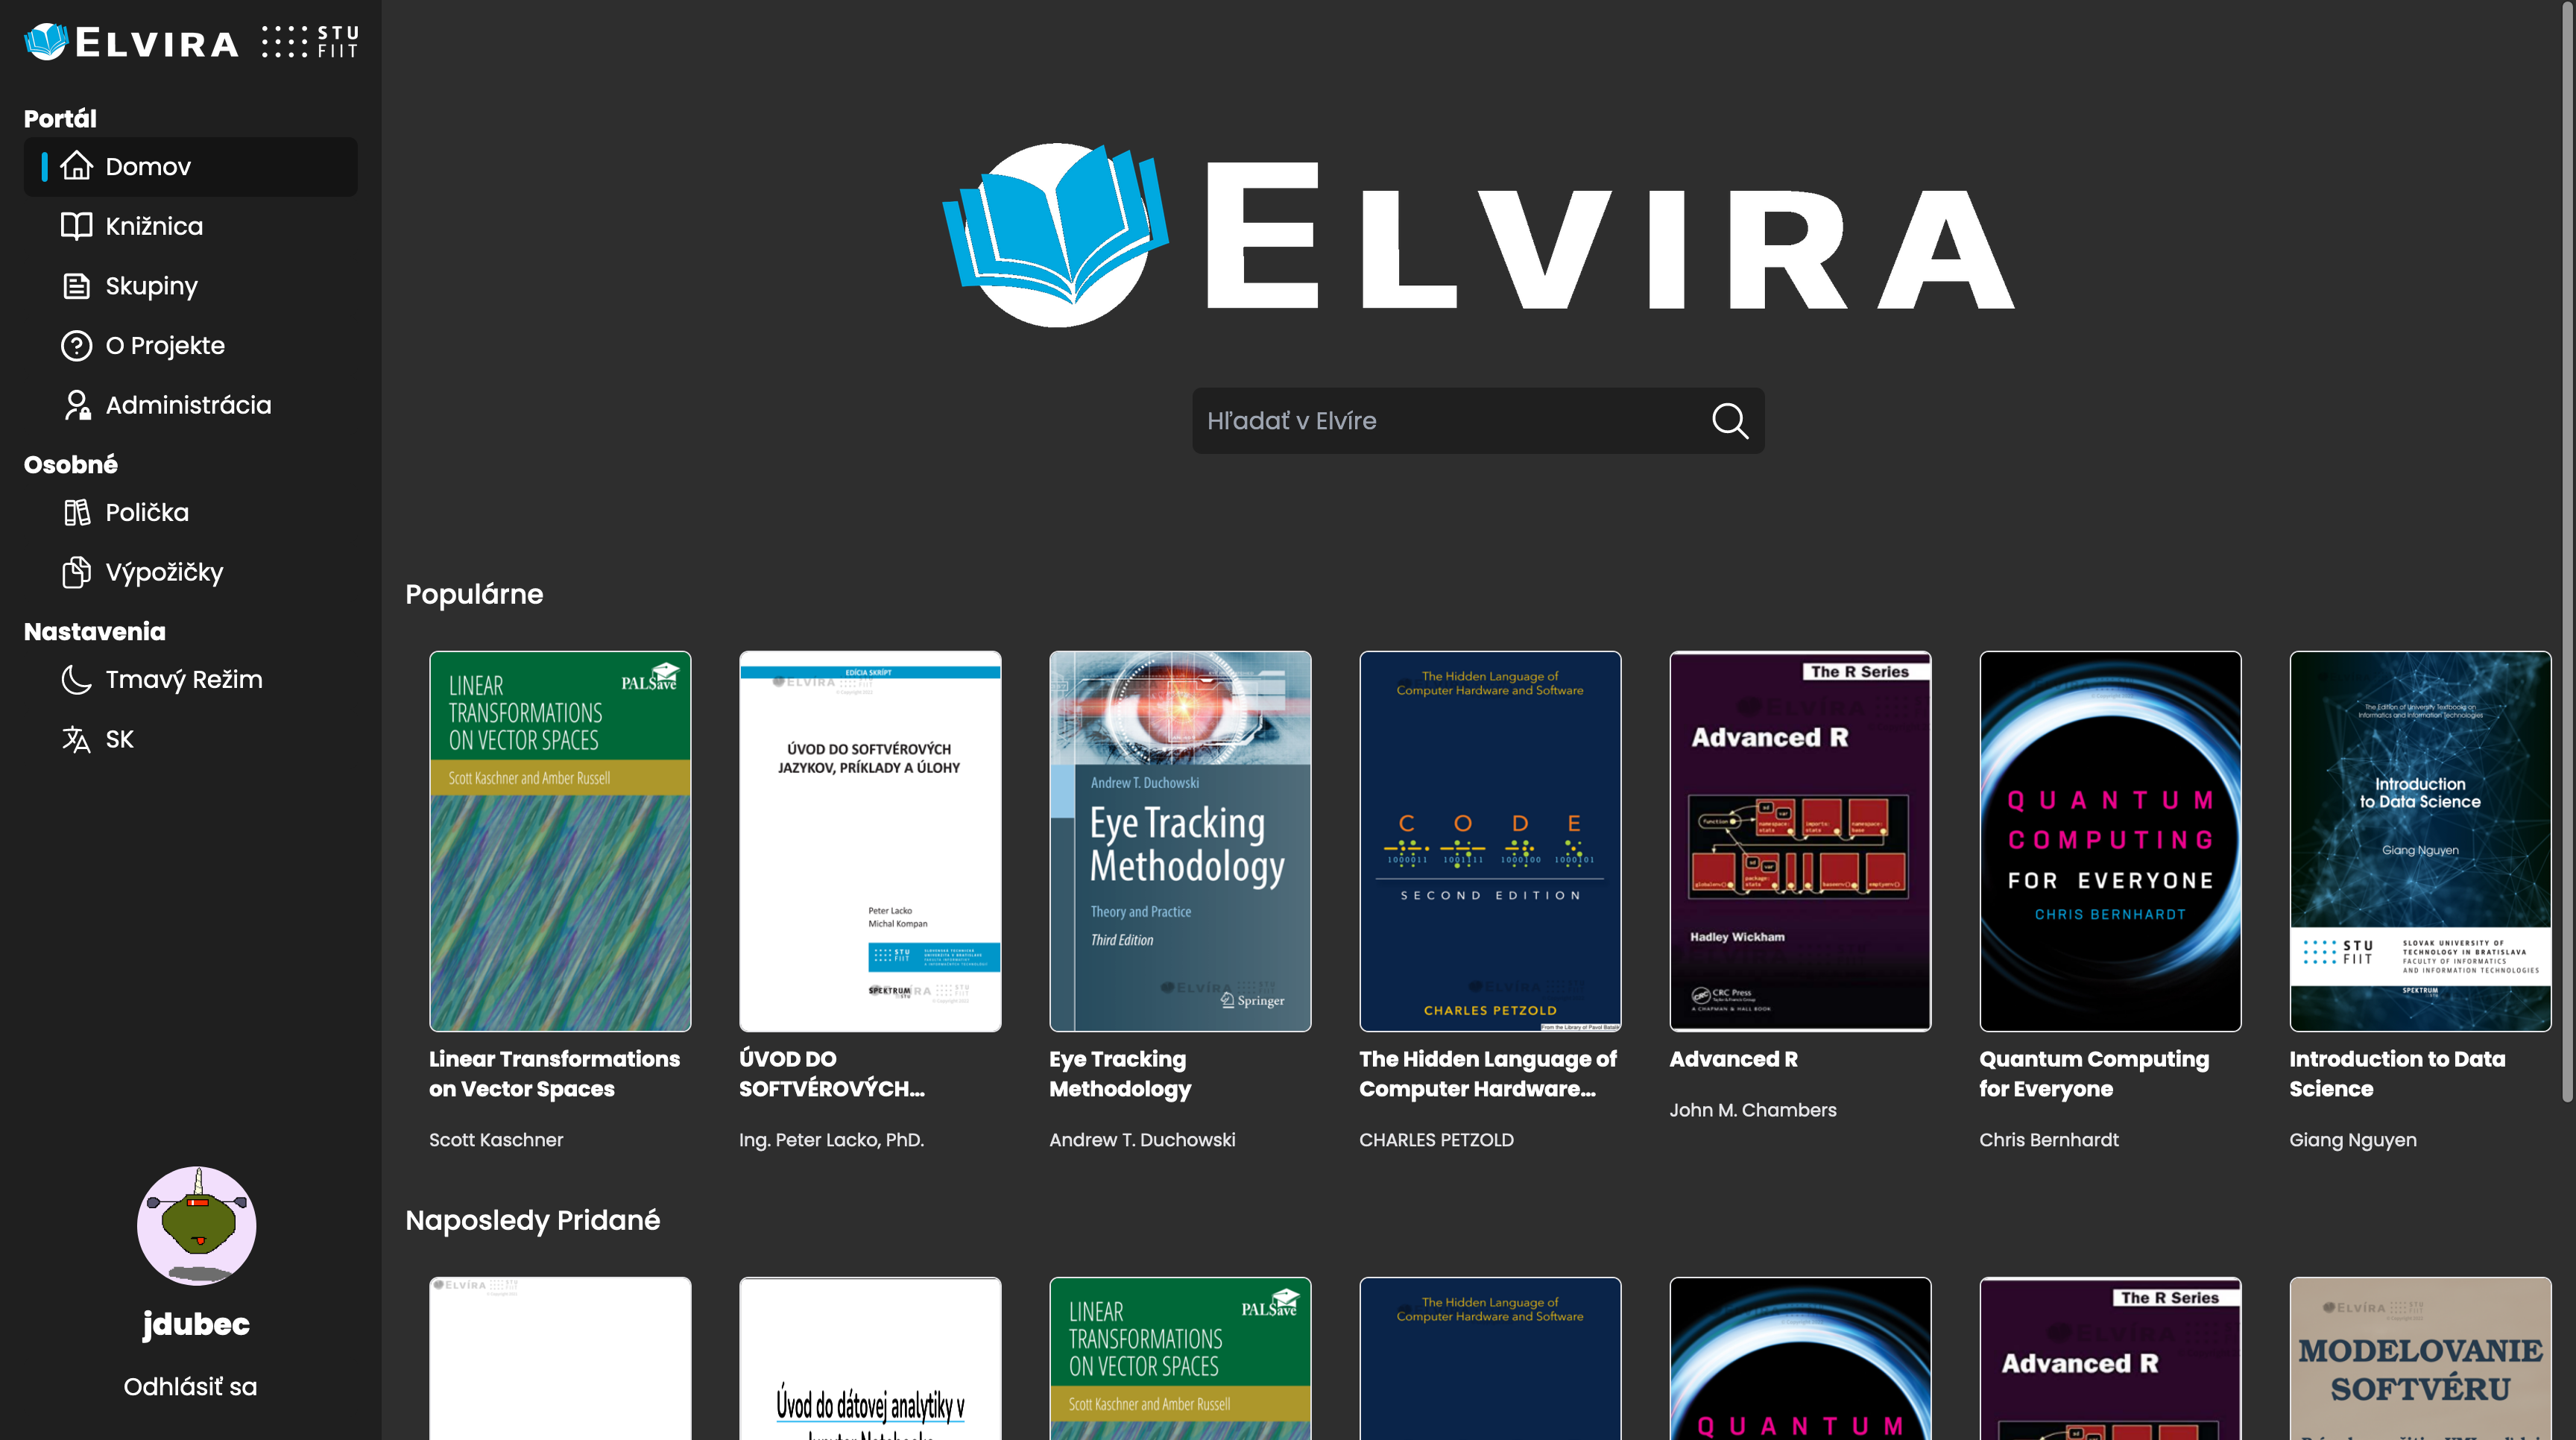 ELVIRA Portal screenshot